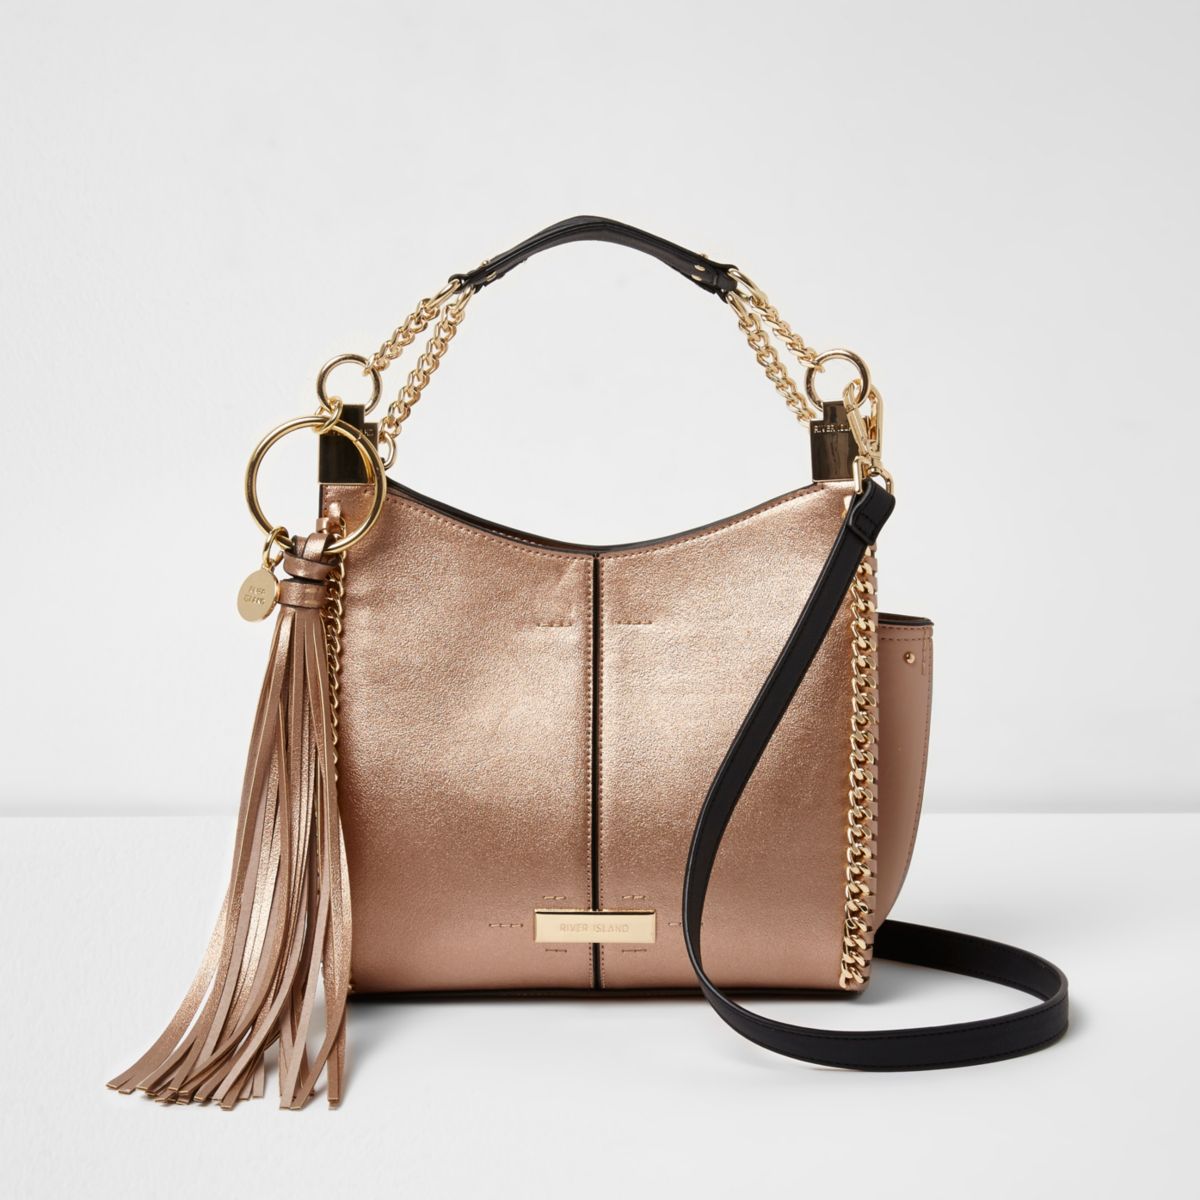 Rose gold metallic chain mini tote bag - Shoulder Bags - Bags & Purses - women